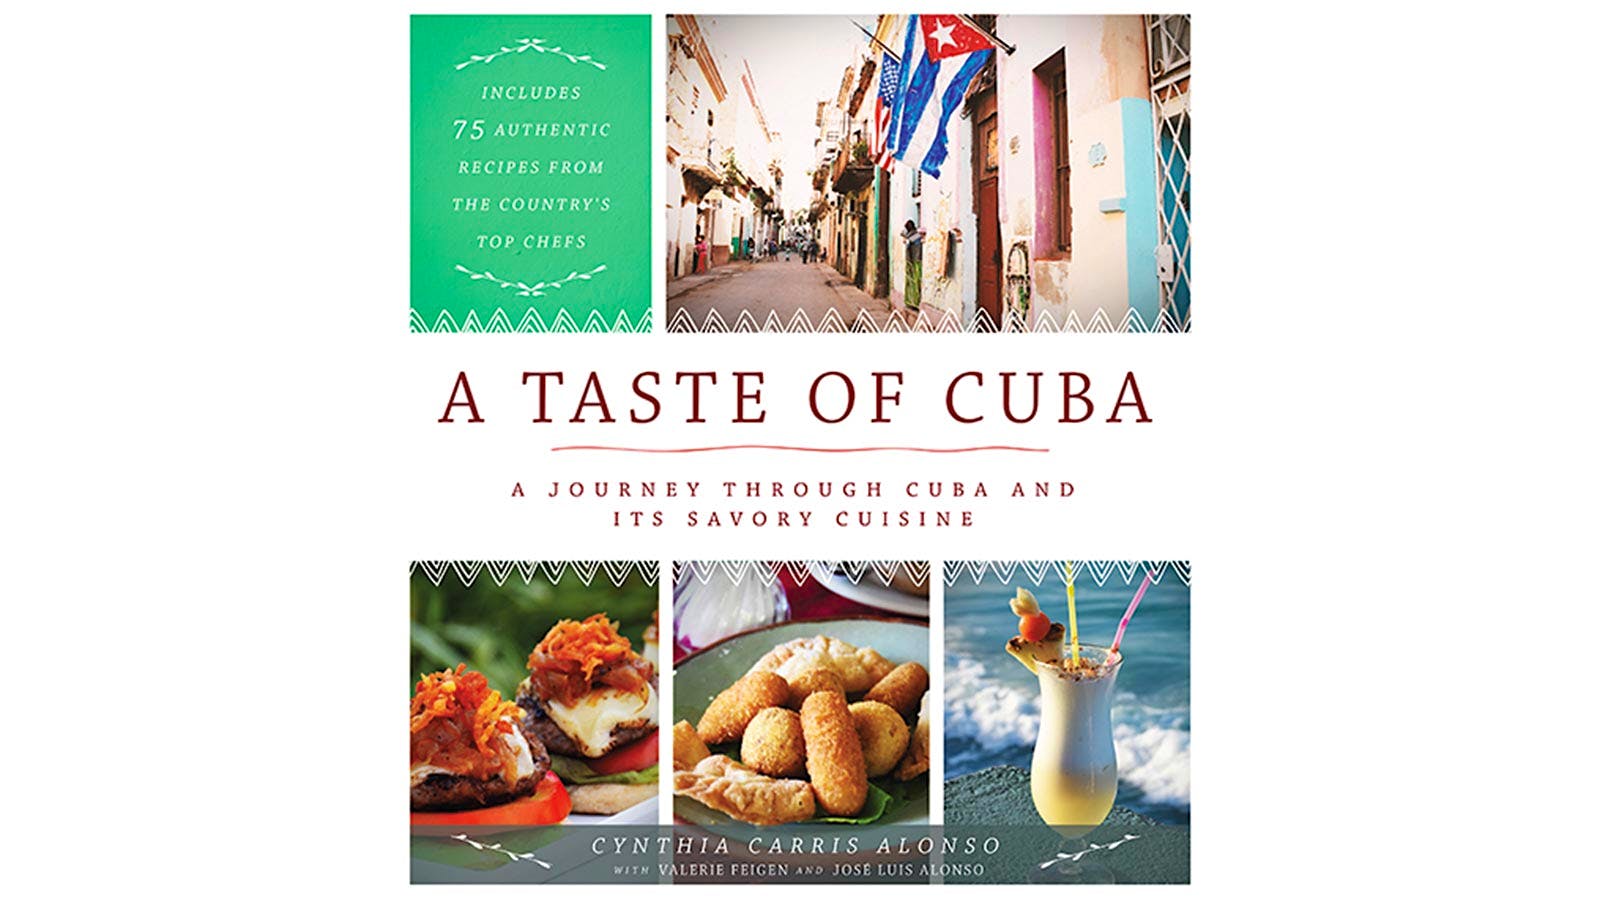 Taste of Cuba